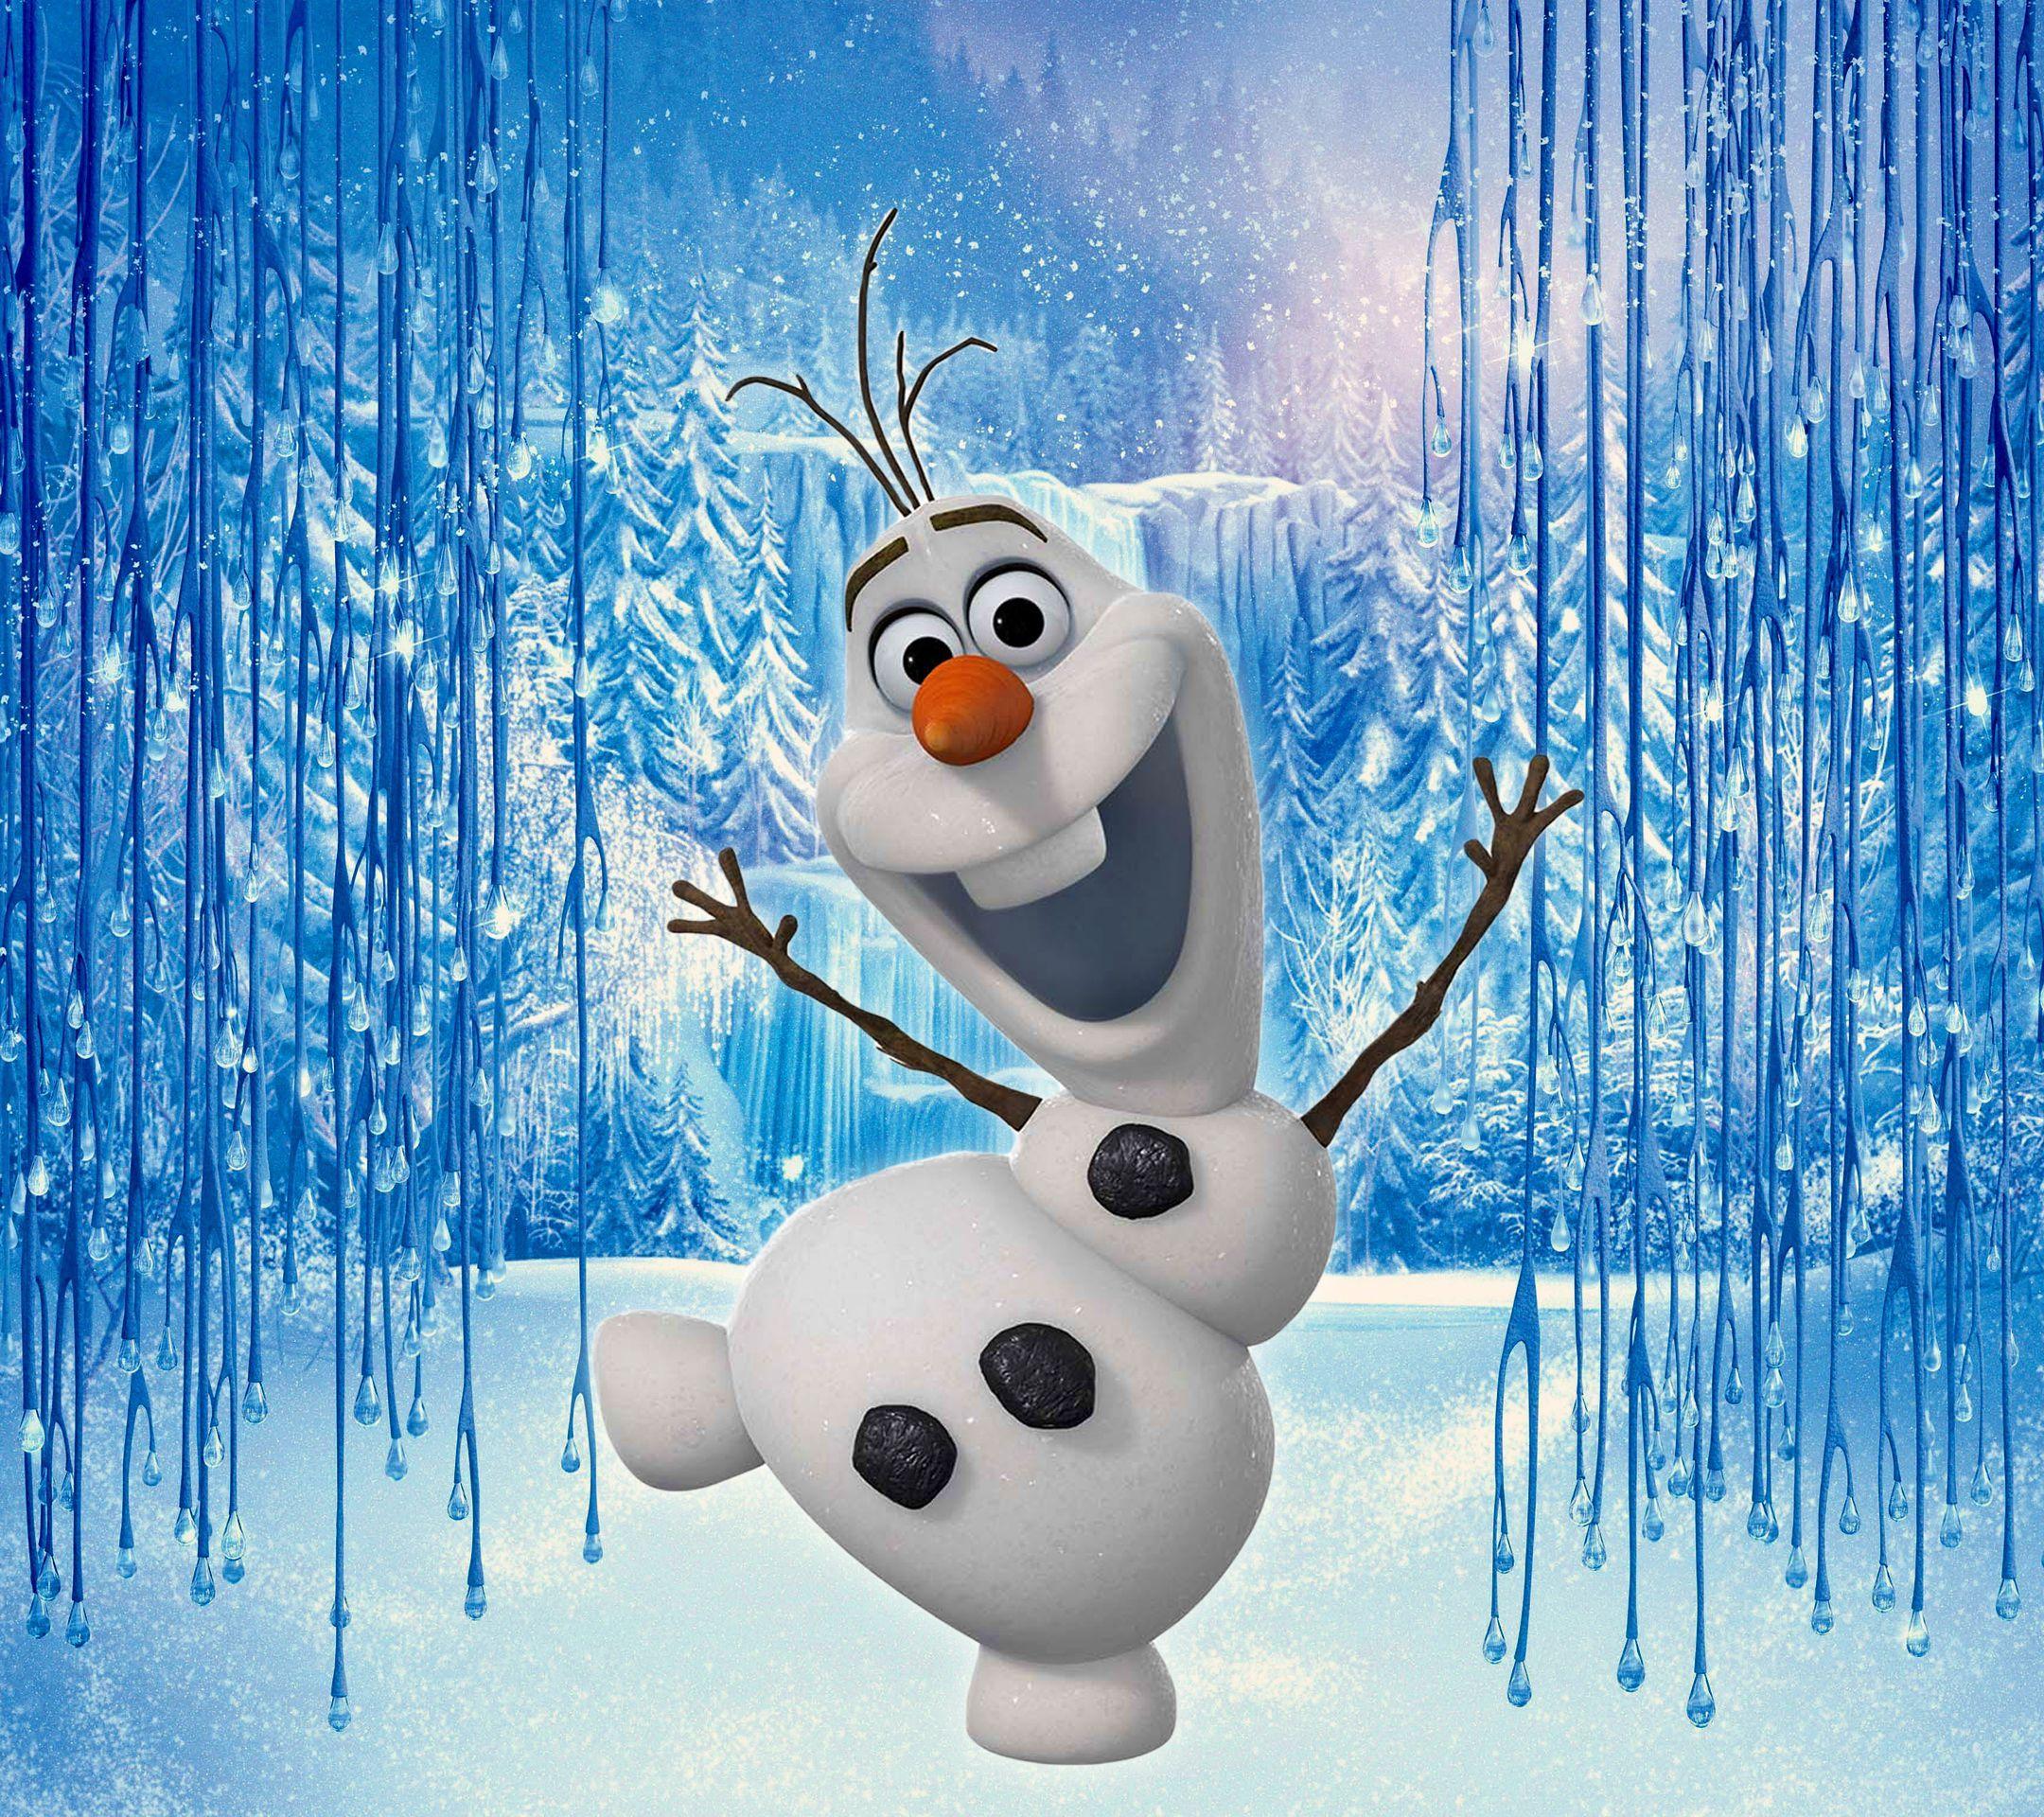 Let It Go: Grown Women Brawl Over 'Frozen' Items. Disney olaf, Frozen wallpaper, Olaf frozen